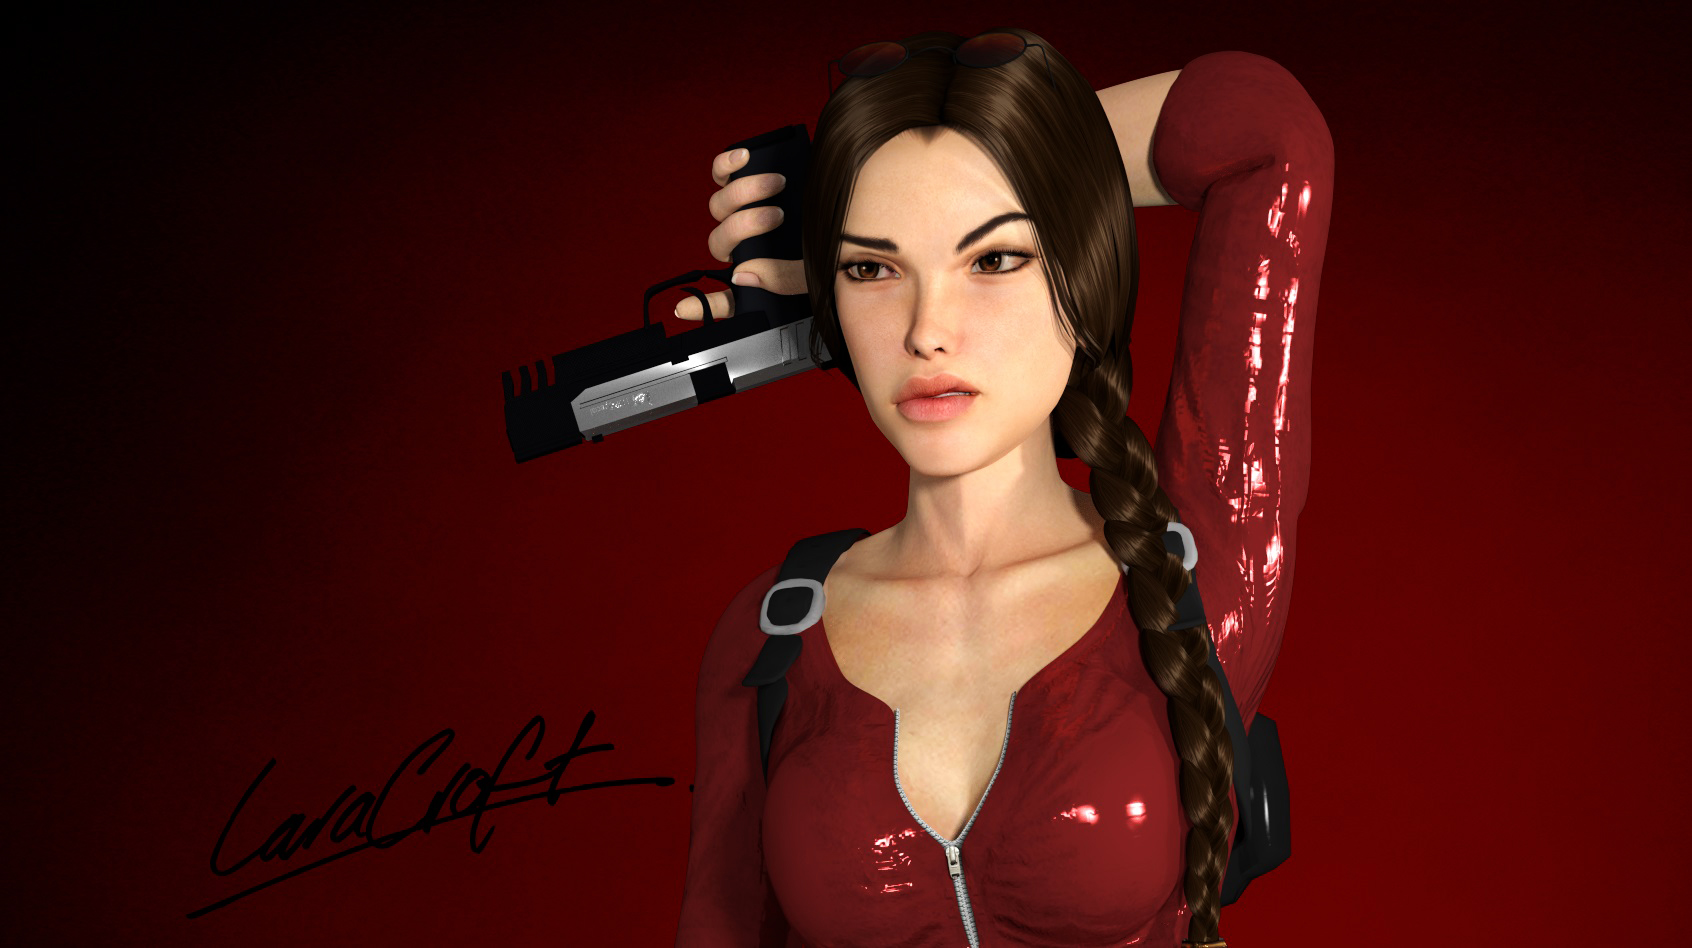 Lara Croft In Red HD Wallpaper By Rockeeterl